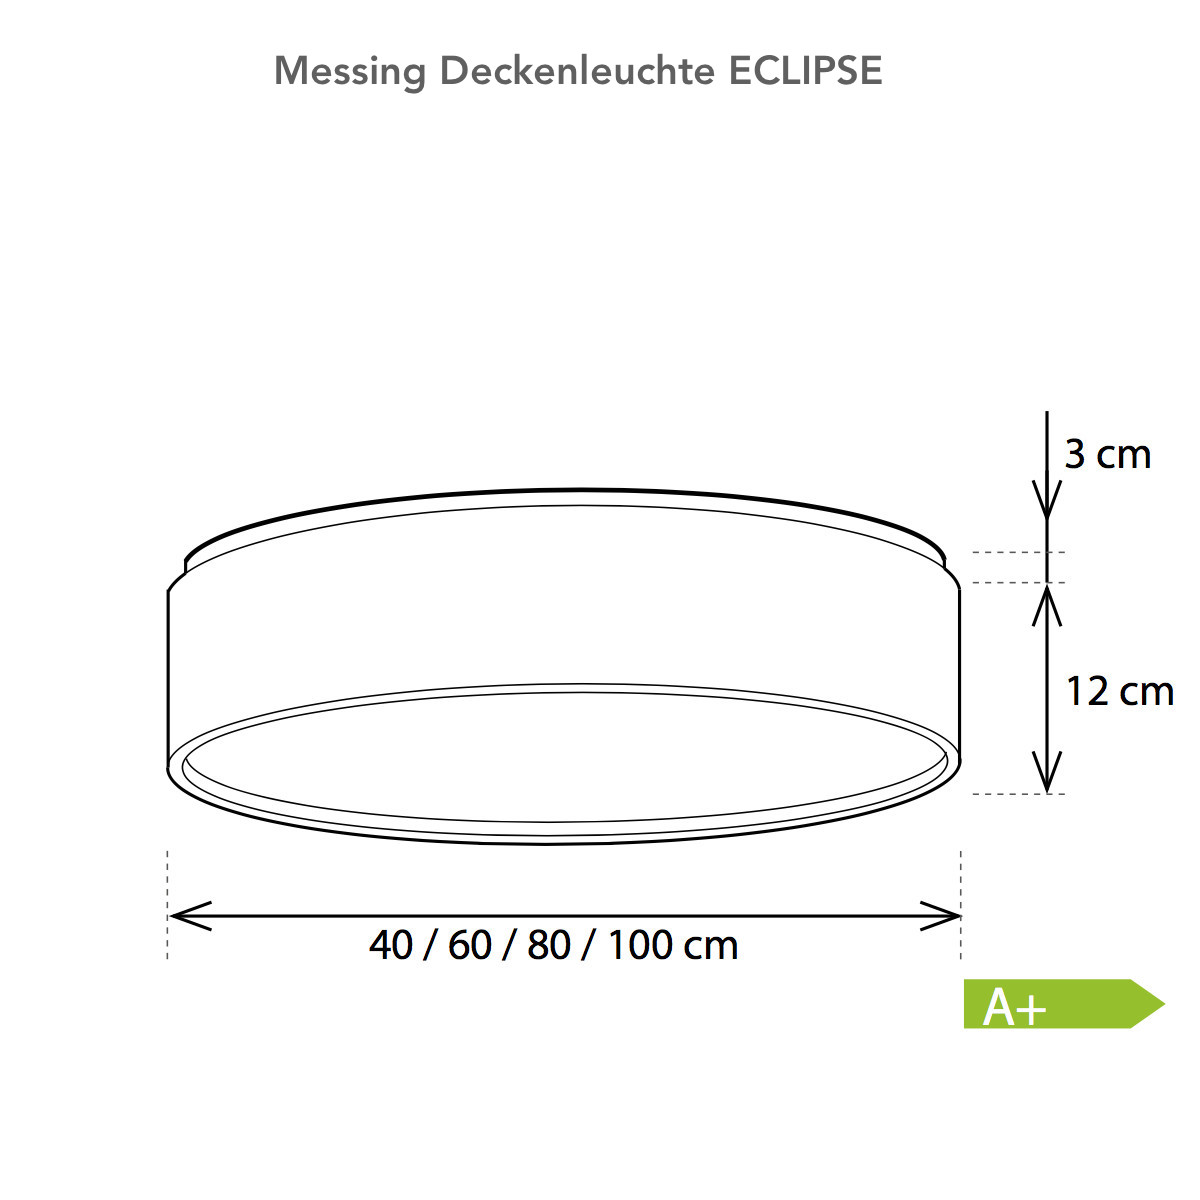 Ring-Deckenleuchte ECLIPSE, Messing, innen reflektierend poliert, Ø 40–100 cm, Bild 3